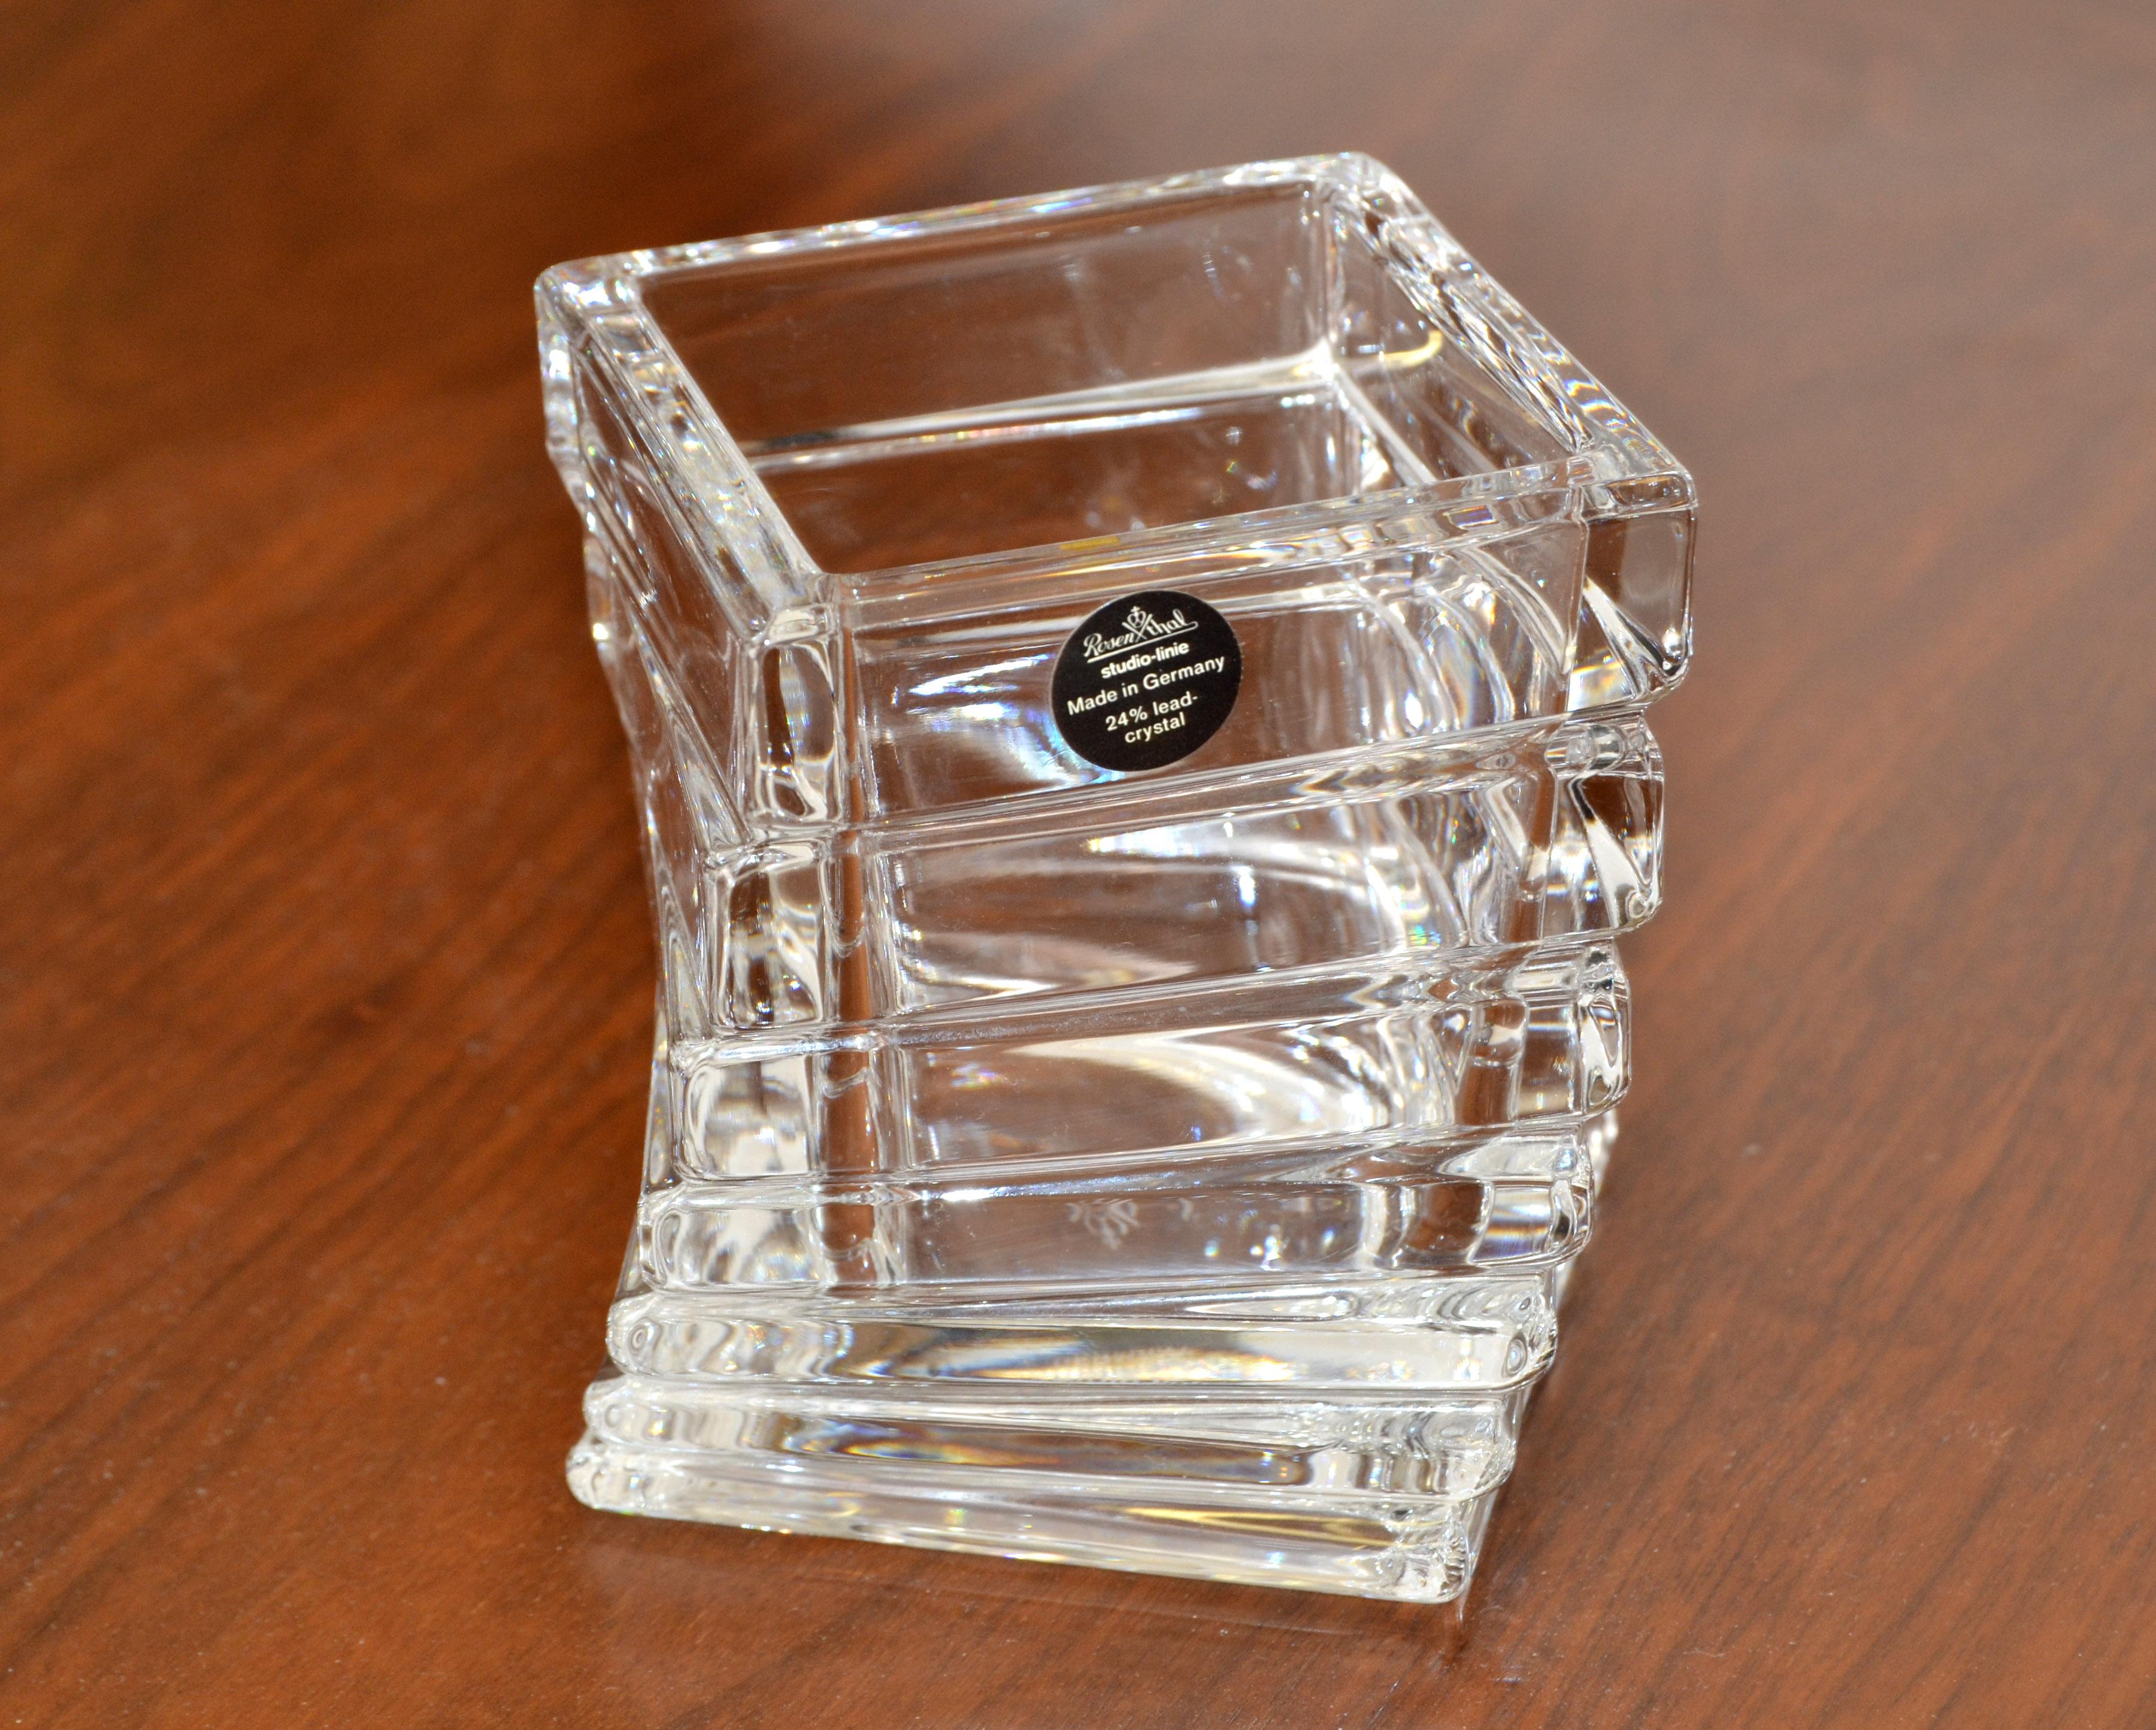 Auffallende Original Rosenthal Turnus Geometric Lead Kristallglasvase, Gefäß von Rosenthal Studio Line made in Germany. 
Gekennzeichnet mit schwarzem Folienlabel Rosenthal classic, 24% Bleikristall und gestempelt am Boden.